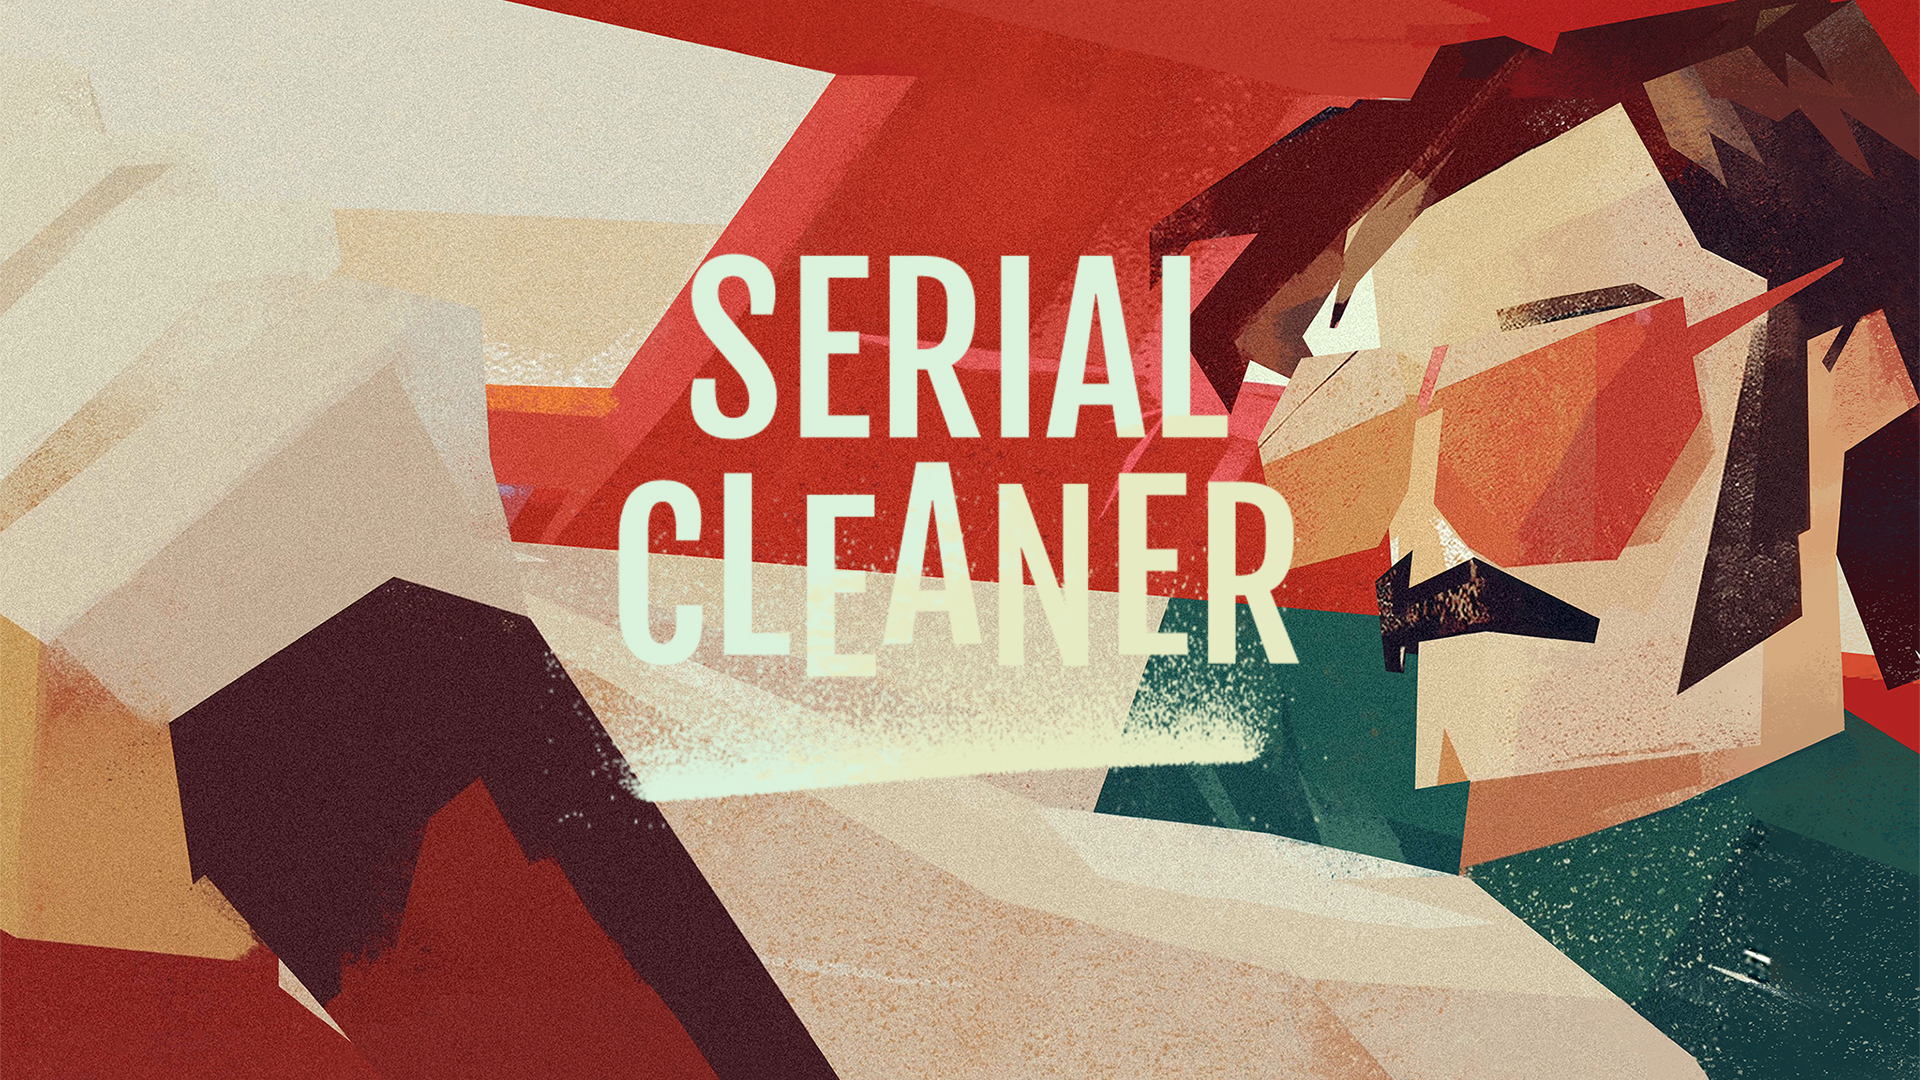 cleaner serial